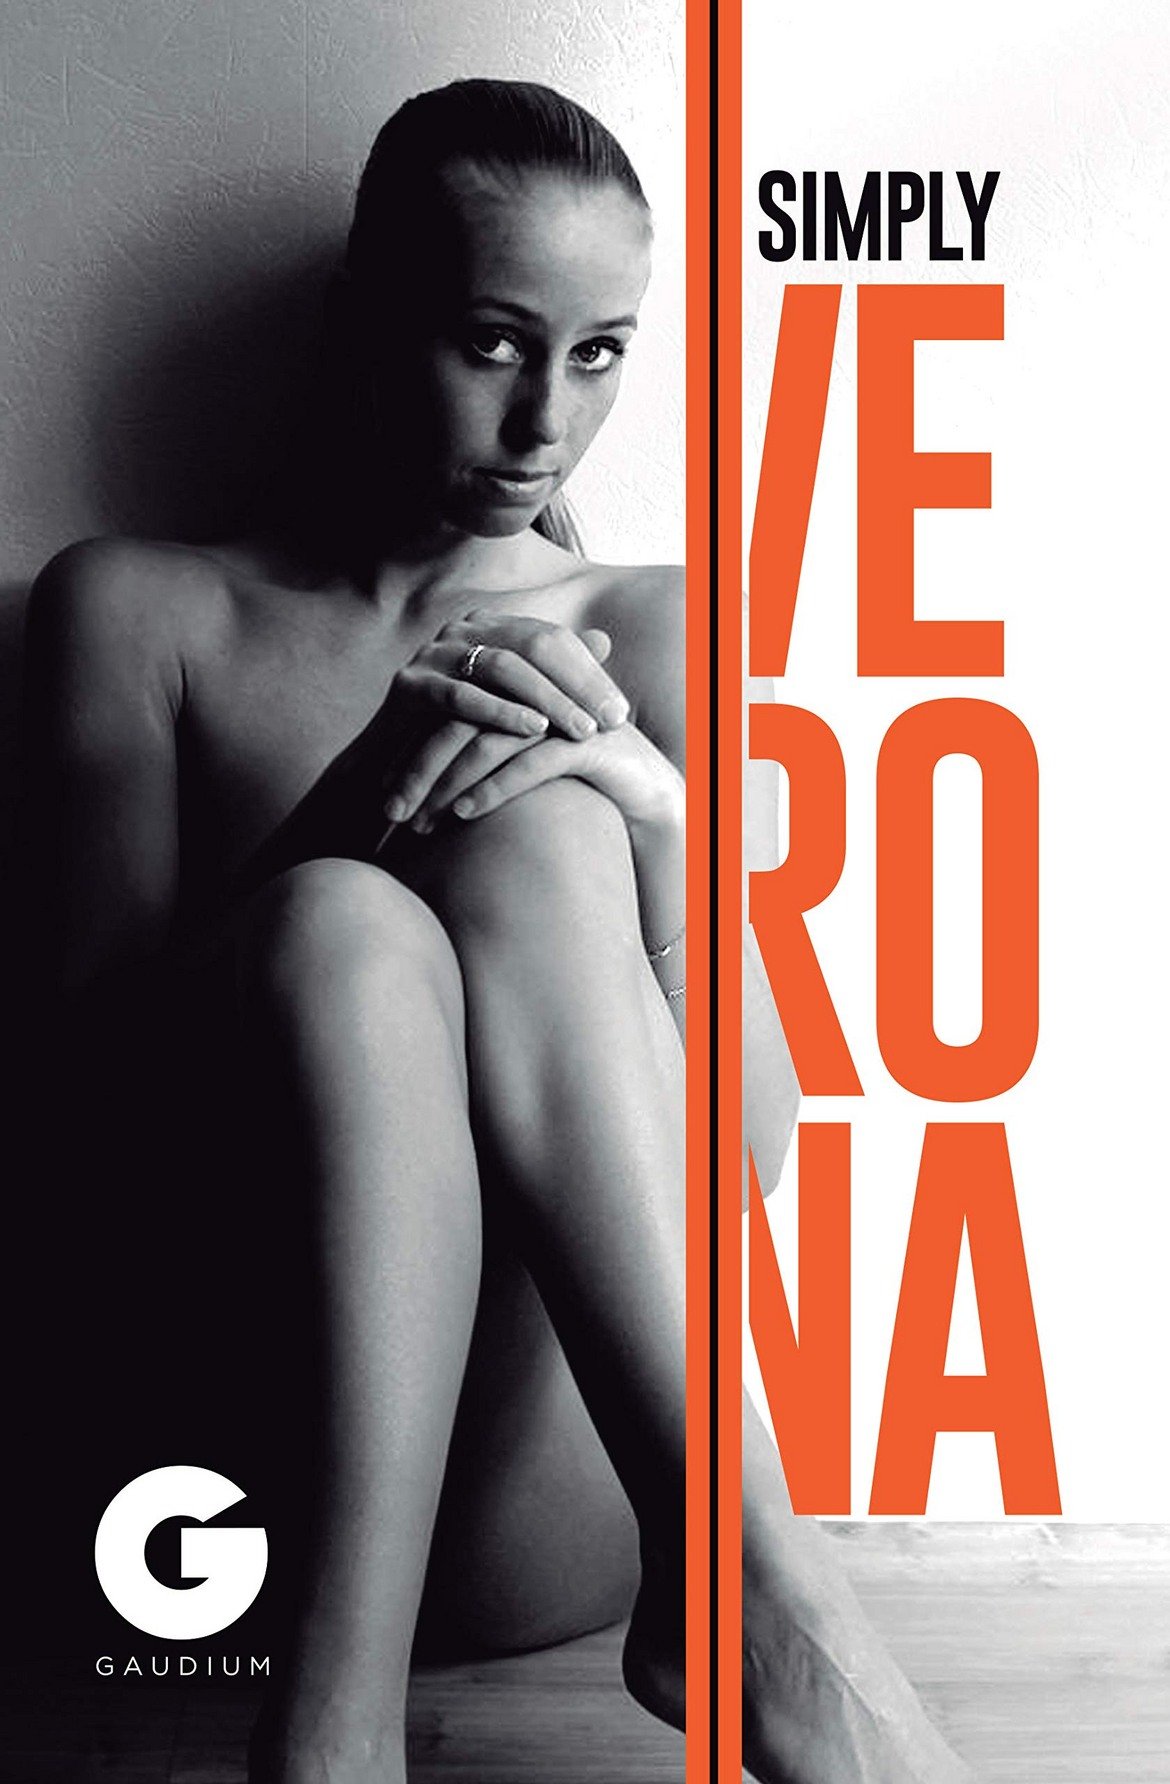 Въпреки всичко, 33-годишната Верона продължава с бизнеса си и изглежда се справя доста добре. В началото на 2020 година пък ще излезе и автобиографията й „Simply Verona: Breaking All the Rules” („Просто Верона: Да наруши всички правила“). Очаква се да бъде интересно четиво.

